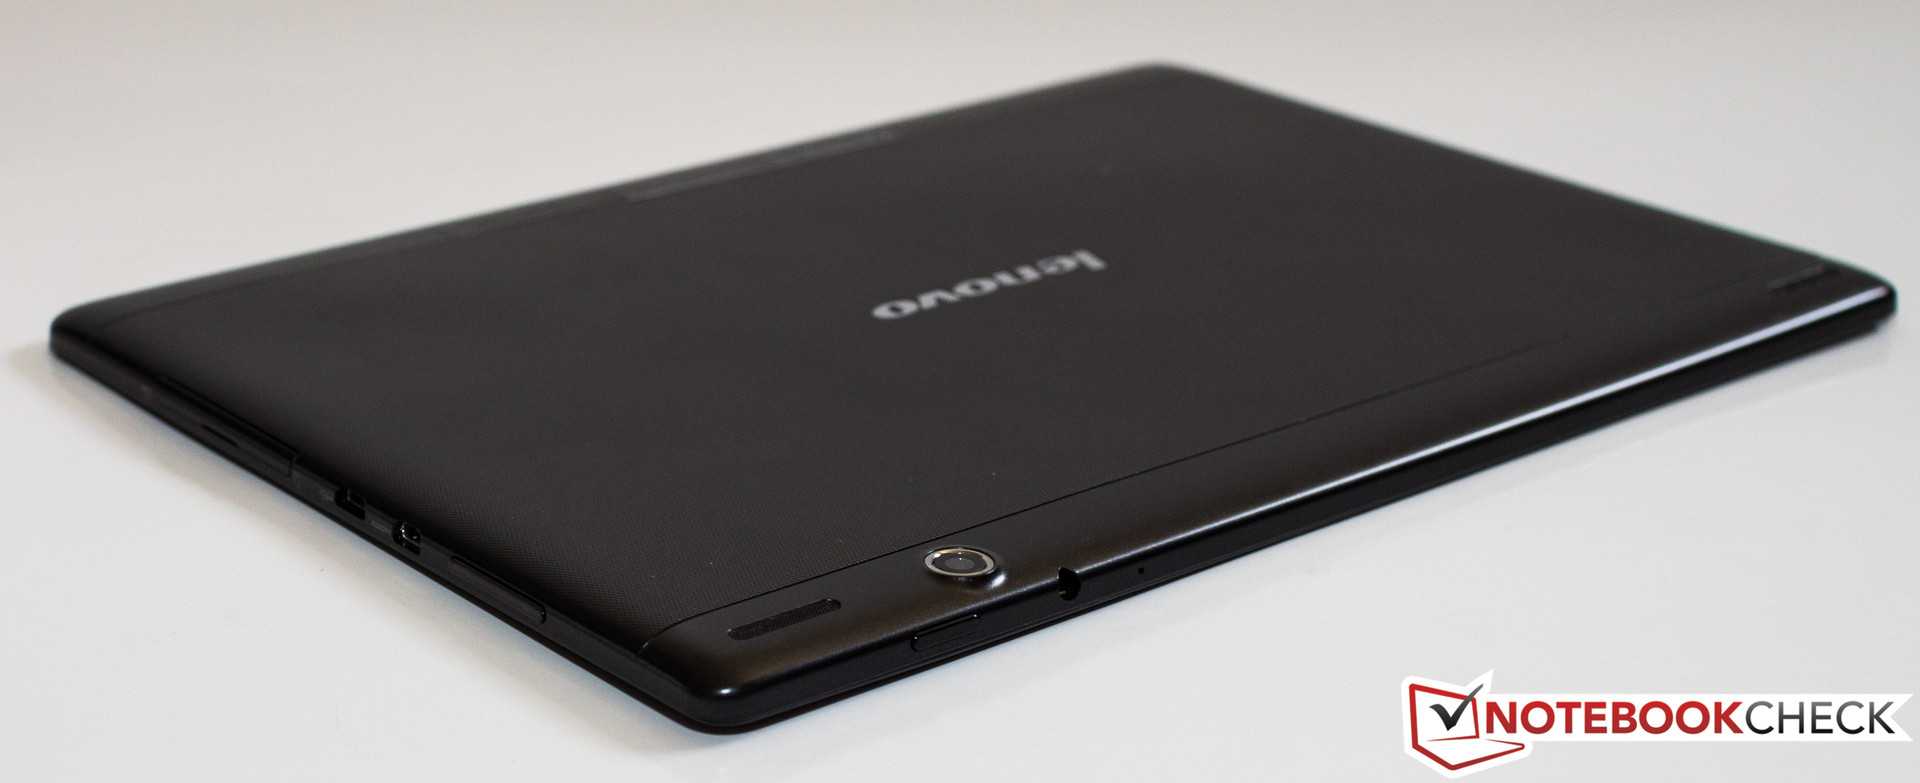 Lenovo ideatab s6000 16gb 3g (черный) - купить , скидки, цена, отзывы, обзор, характеристики - планшеты